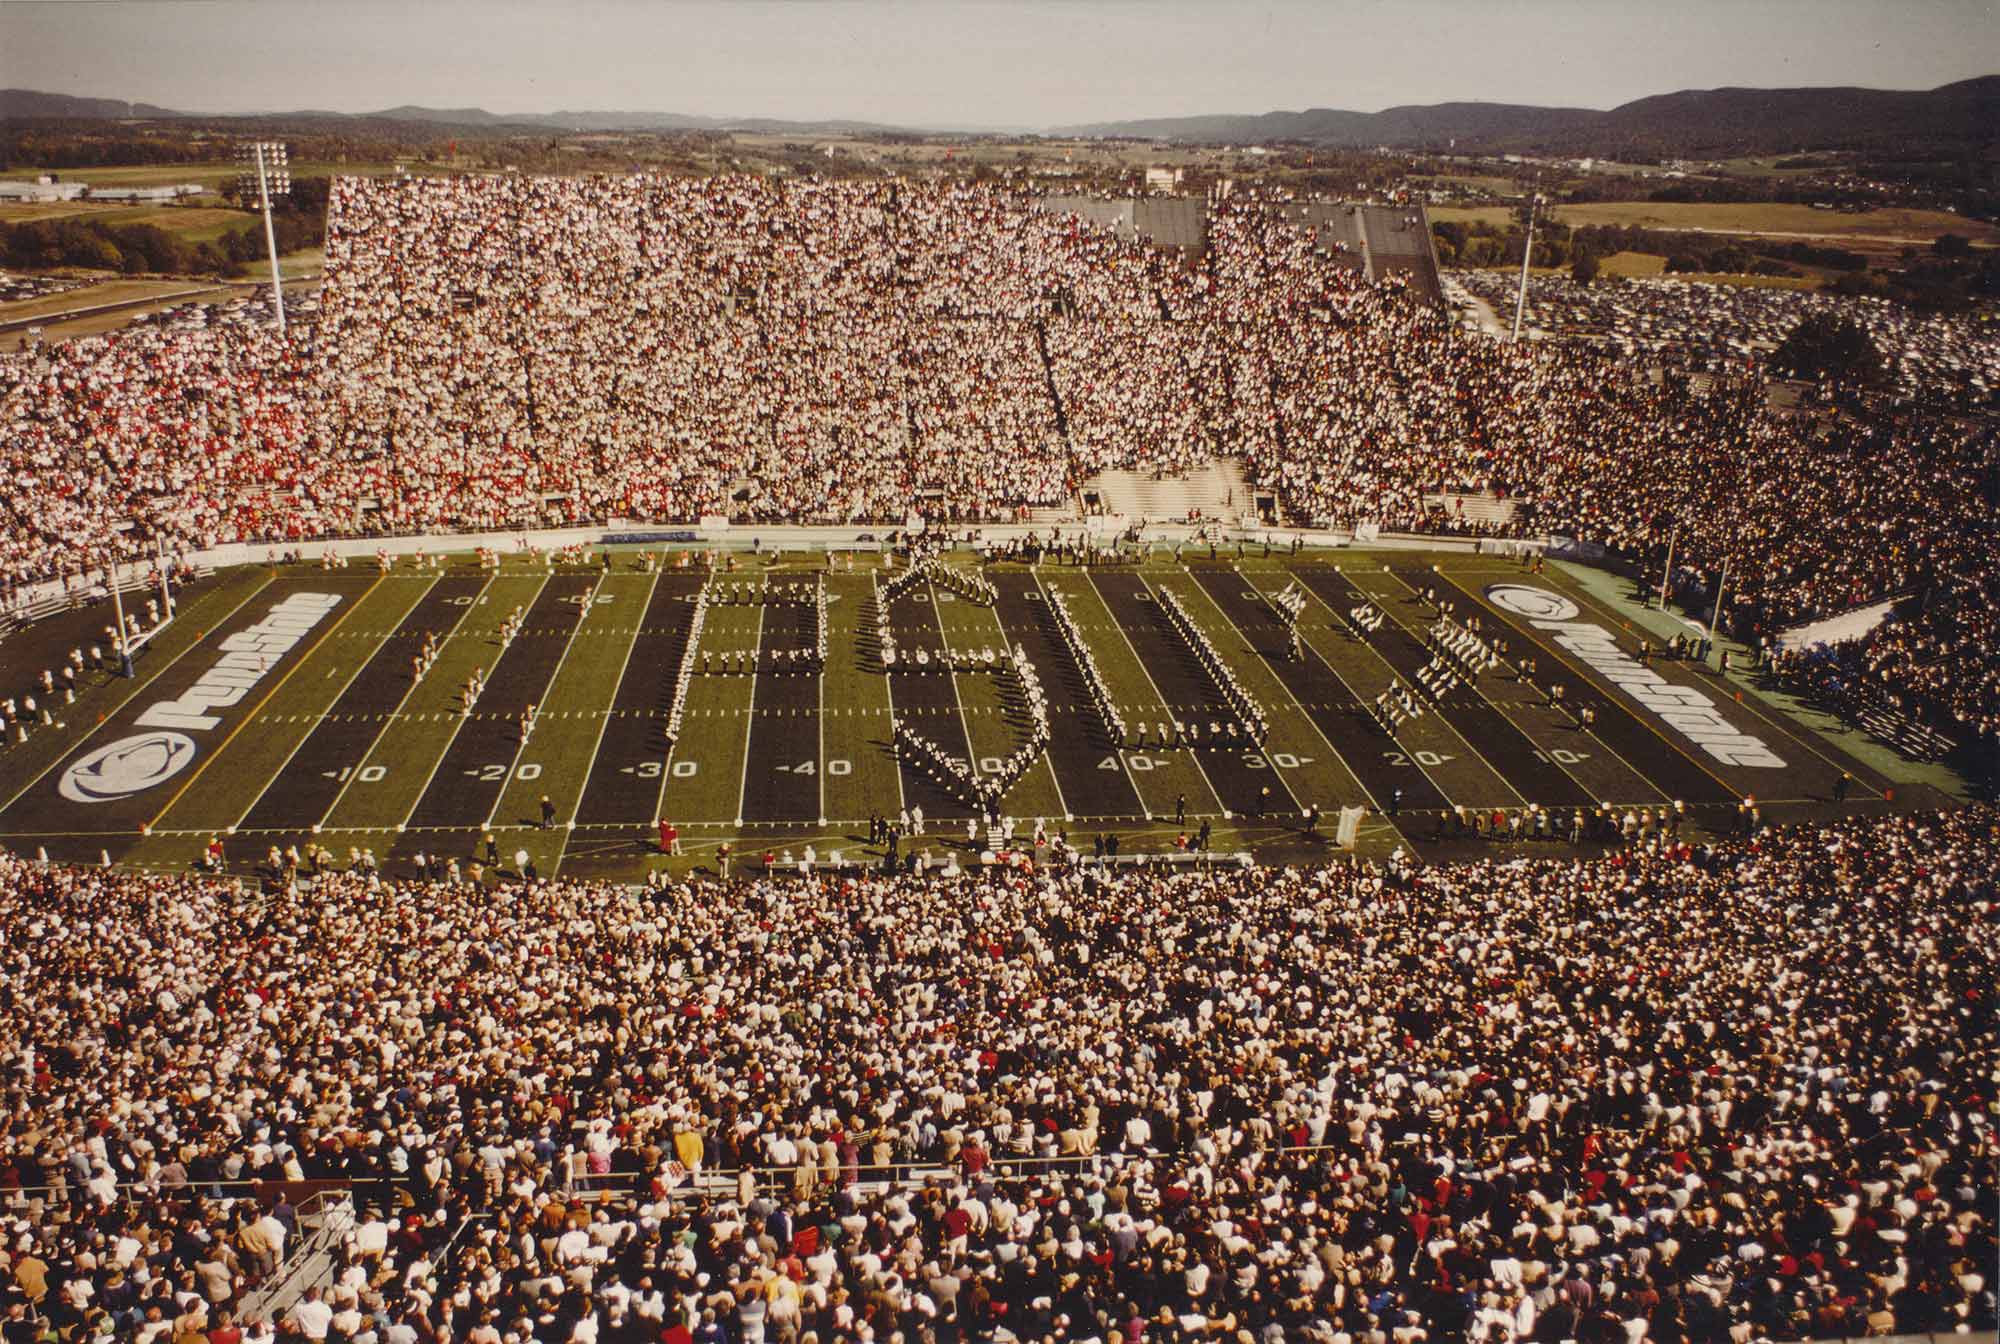 Penn State Beaver Stadium historical image